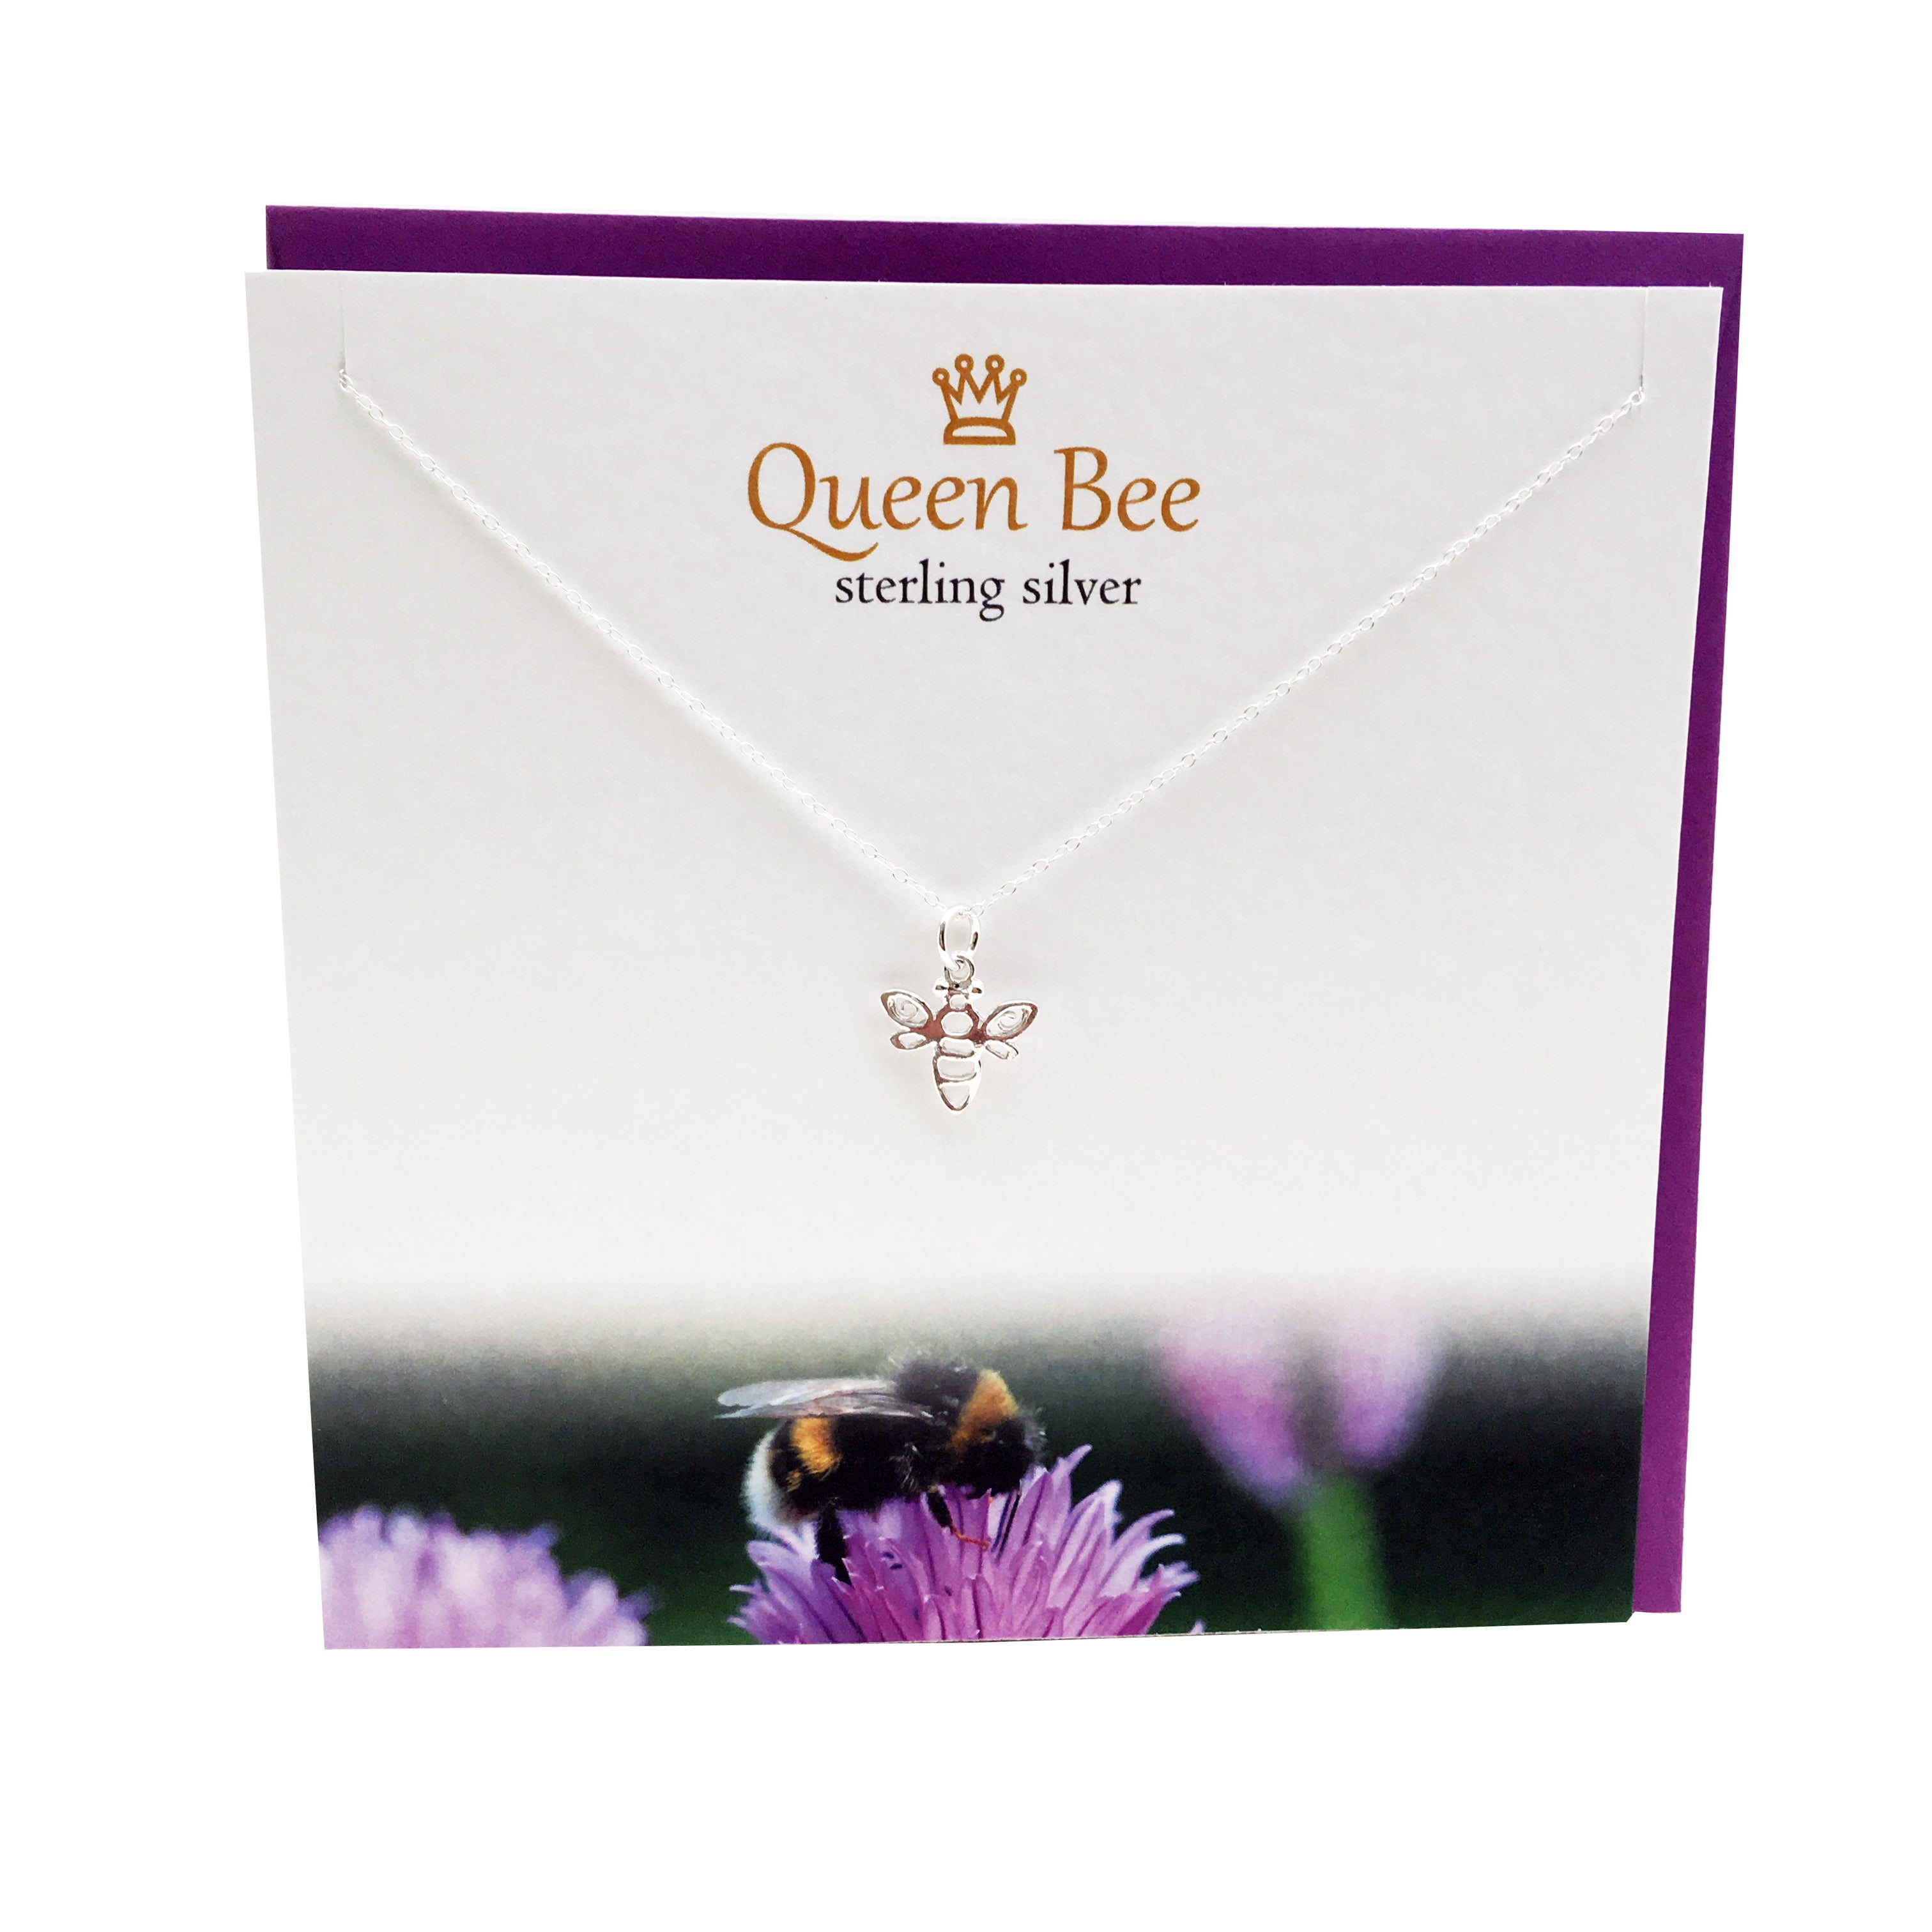 Queen Bee silver pendant | The Silver Studio Scotland